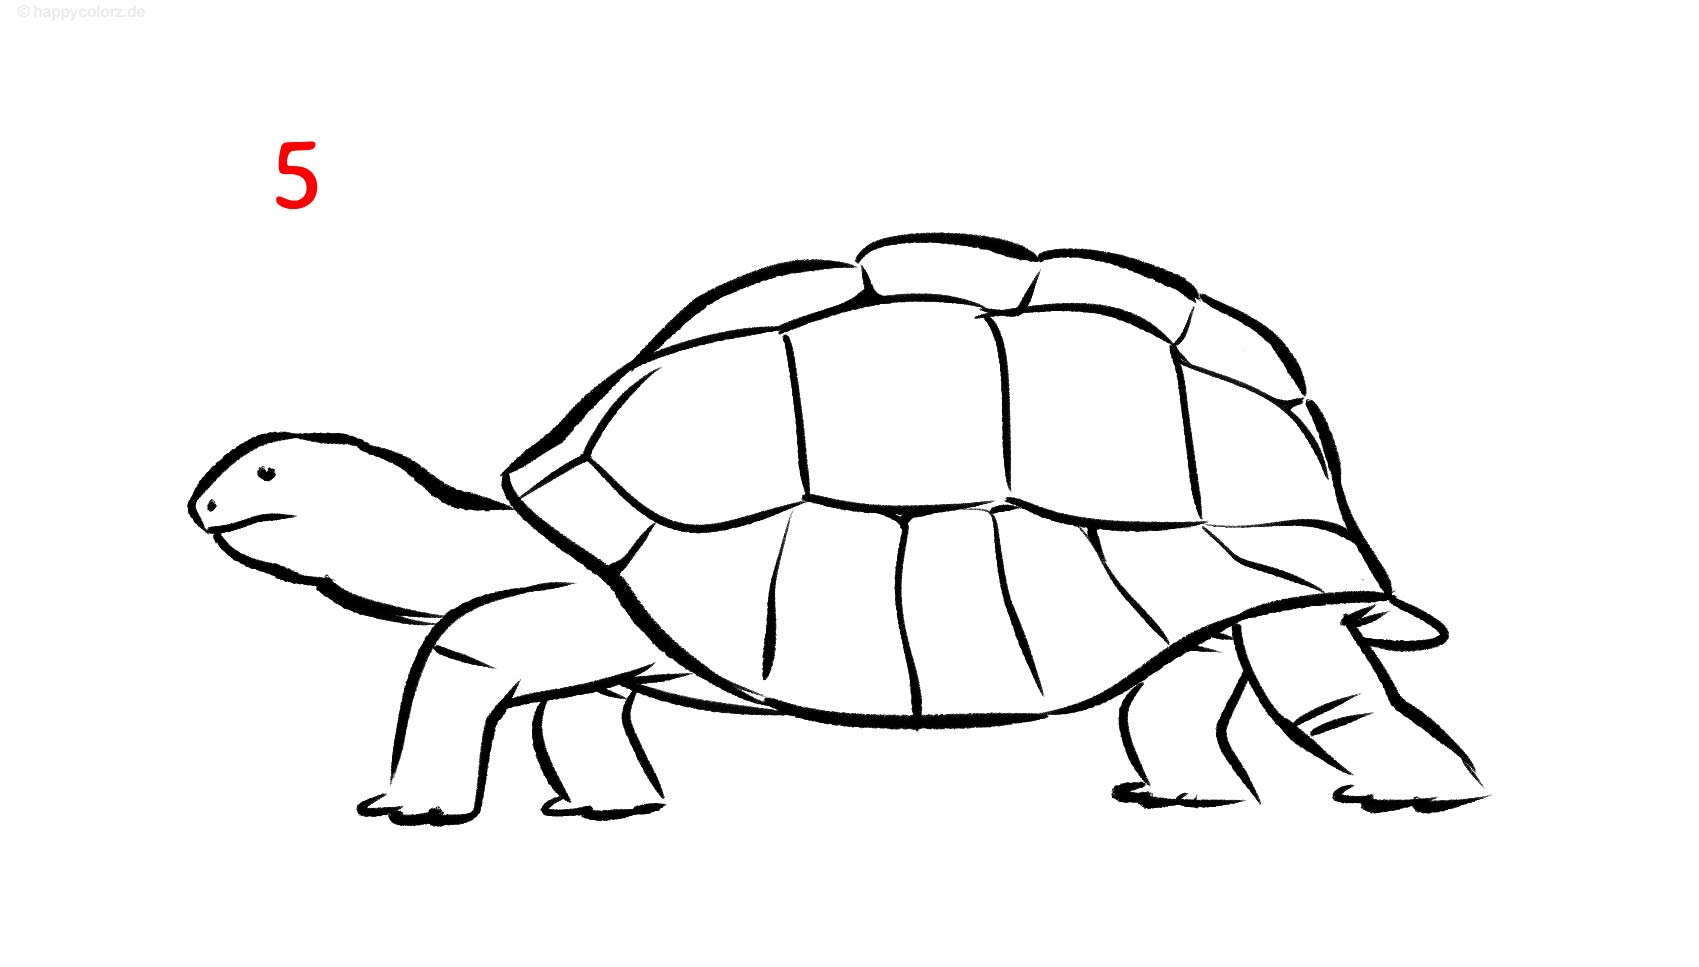 Anleitung: Schildkröte zeichnen